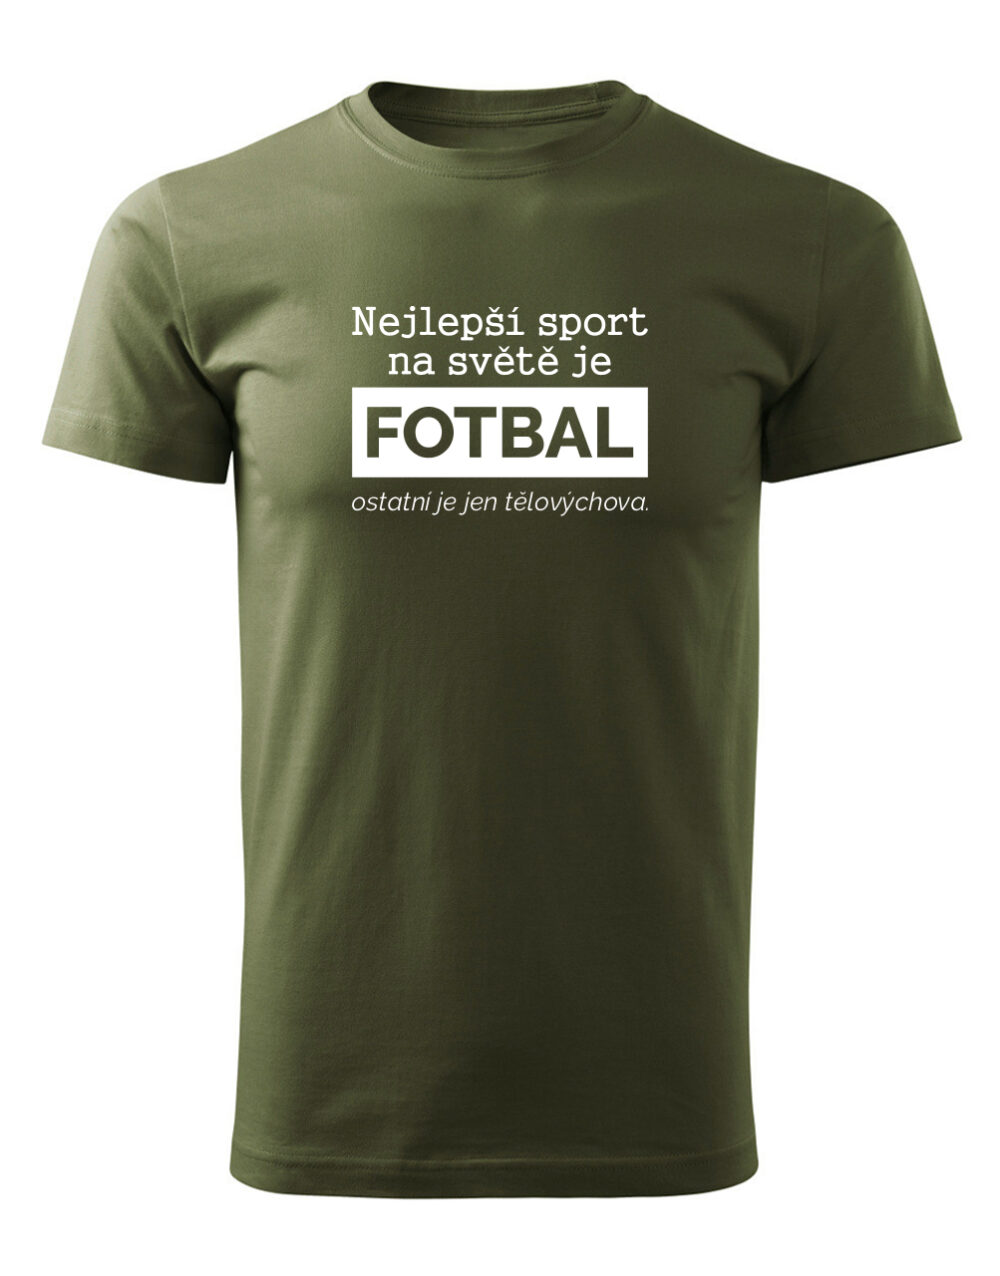 Pánské tričko s potiskem Nejlepší sport je fotbal vojenská zelená